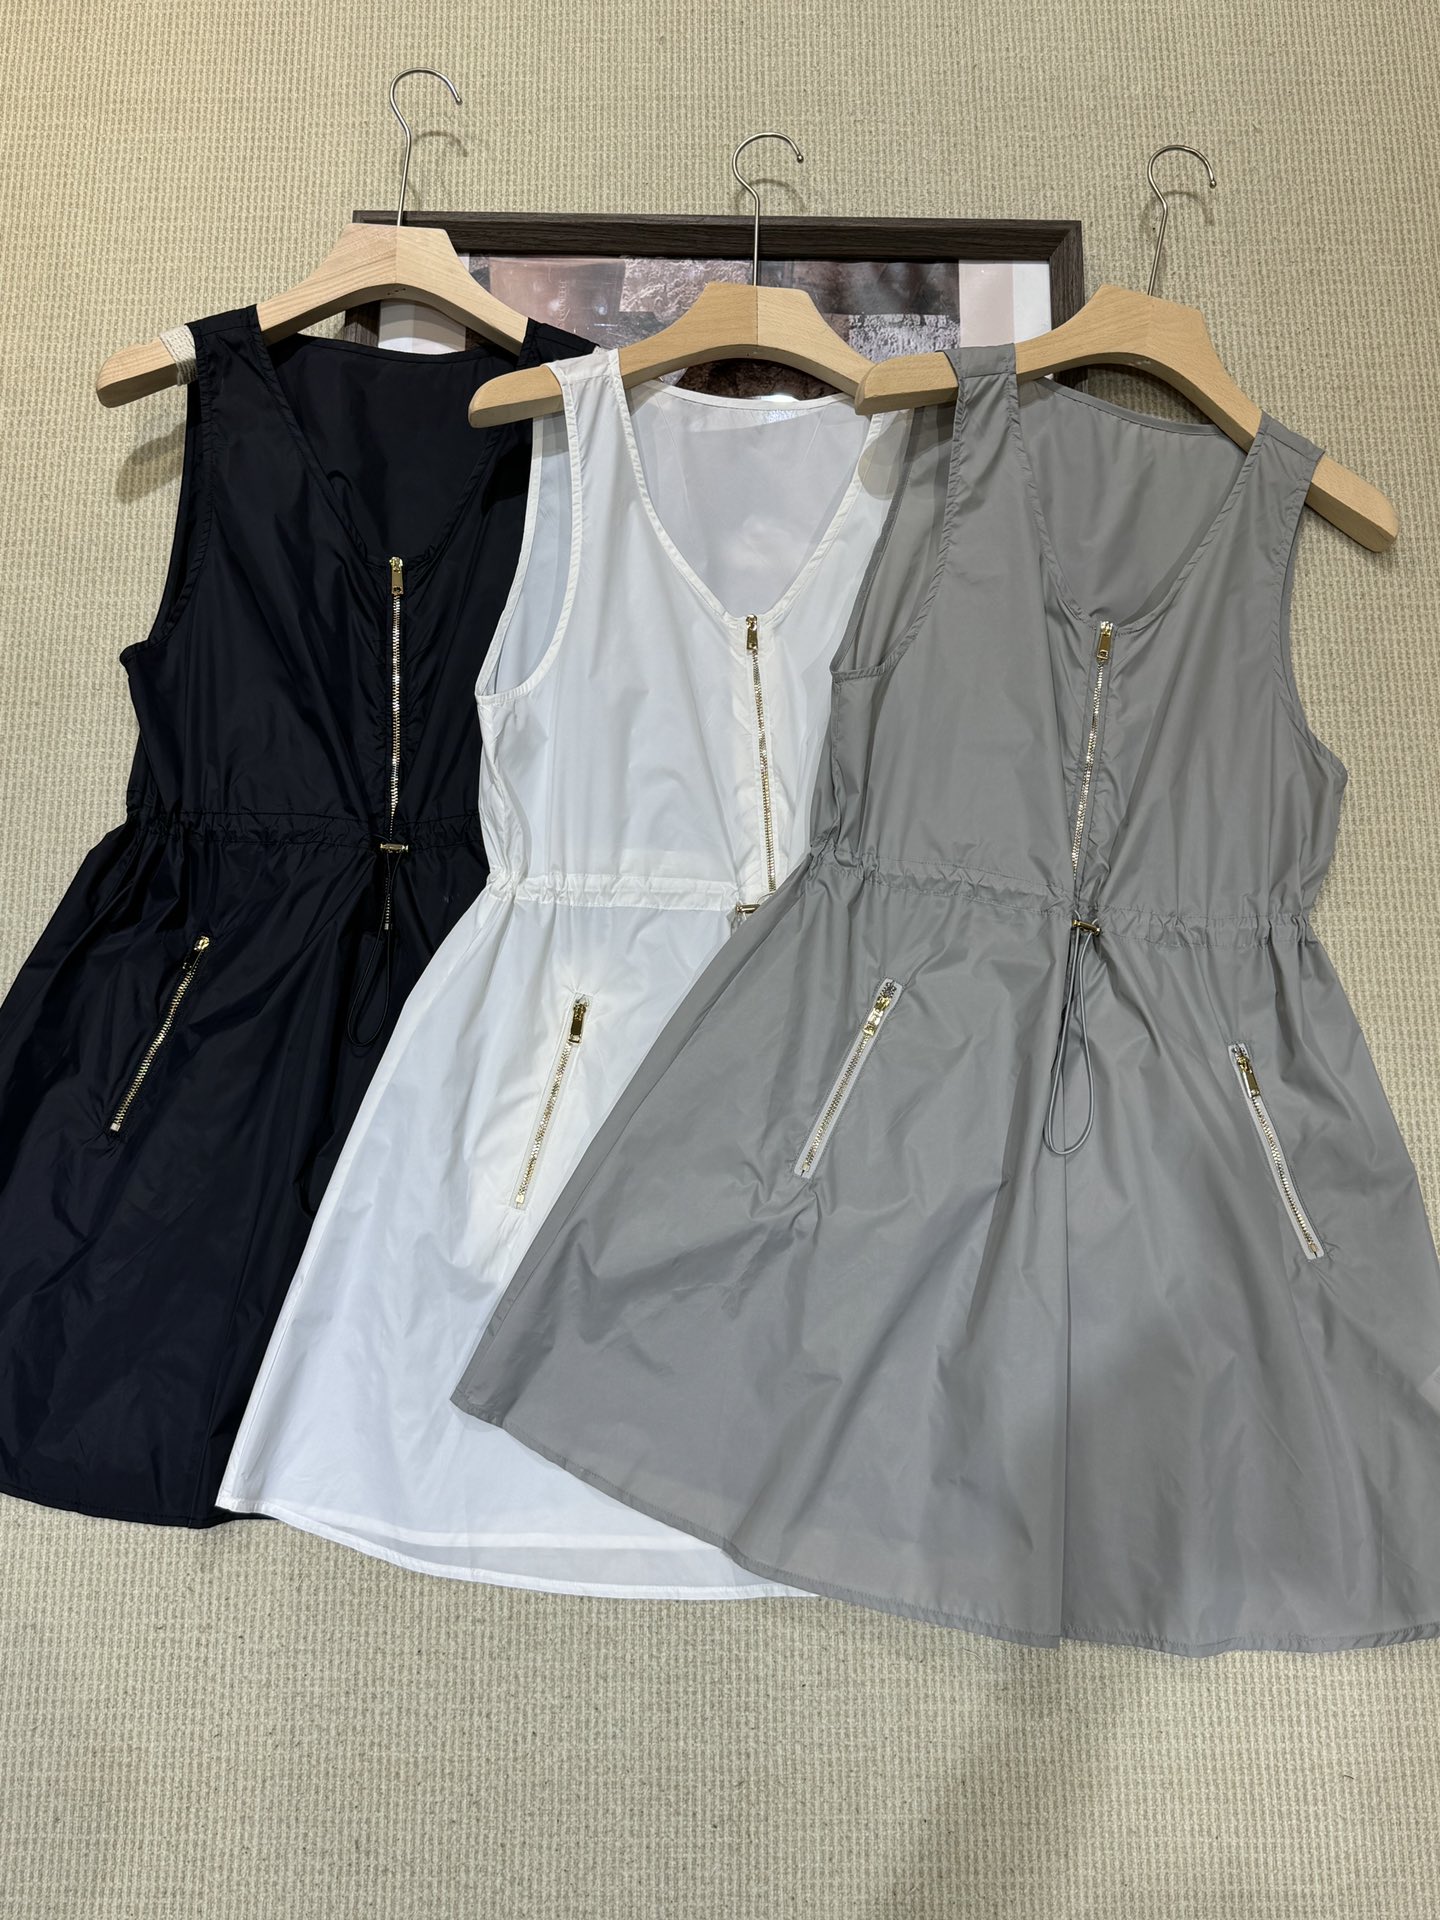 MiuMiu Roupa Vestidos Preto Cinzento Branco Nylon Colecção de Verão